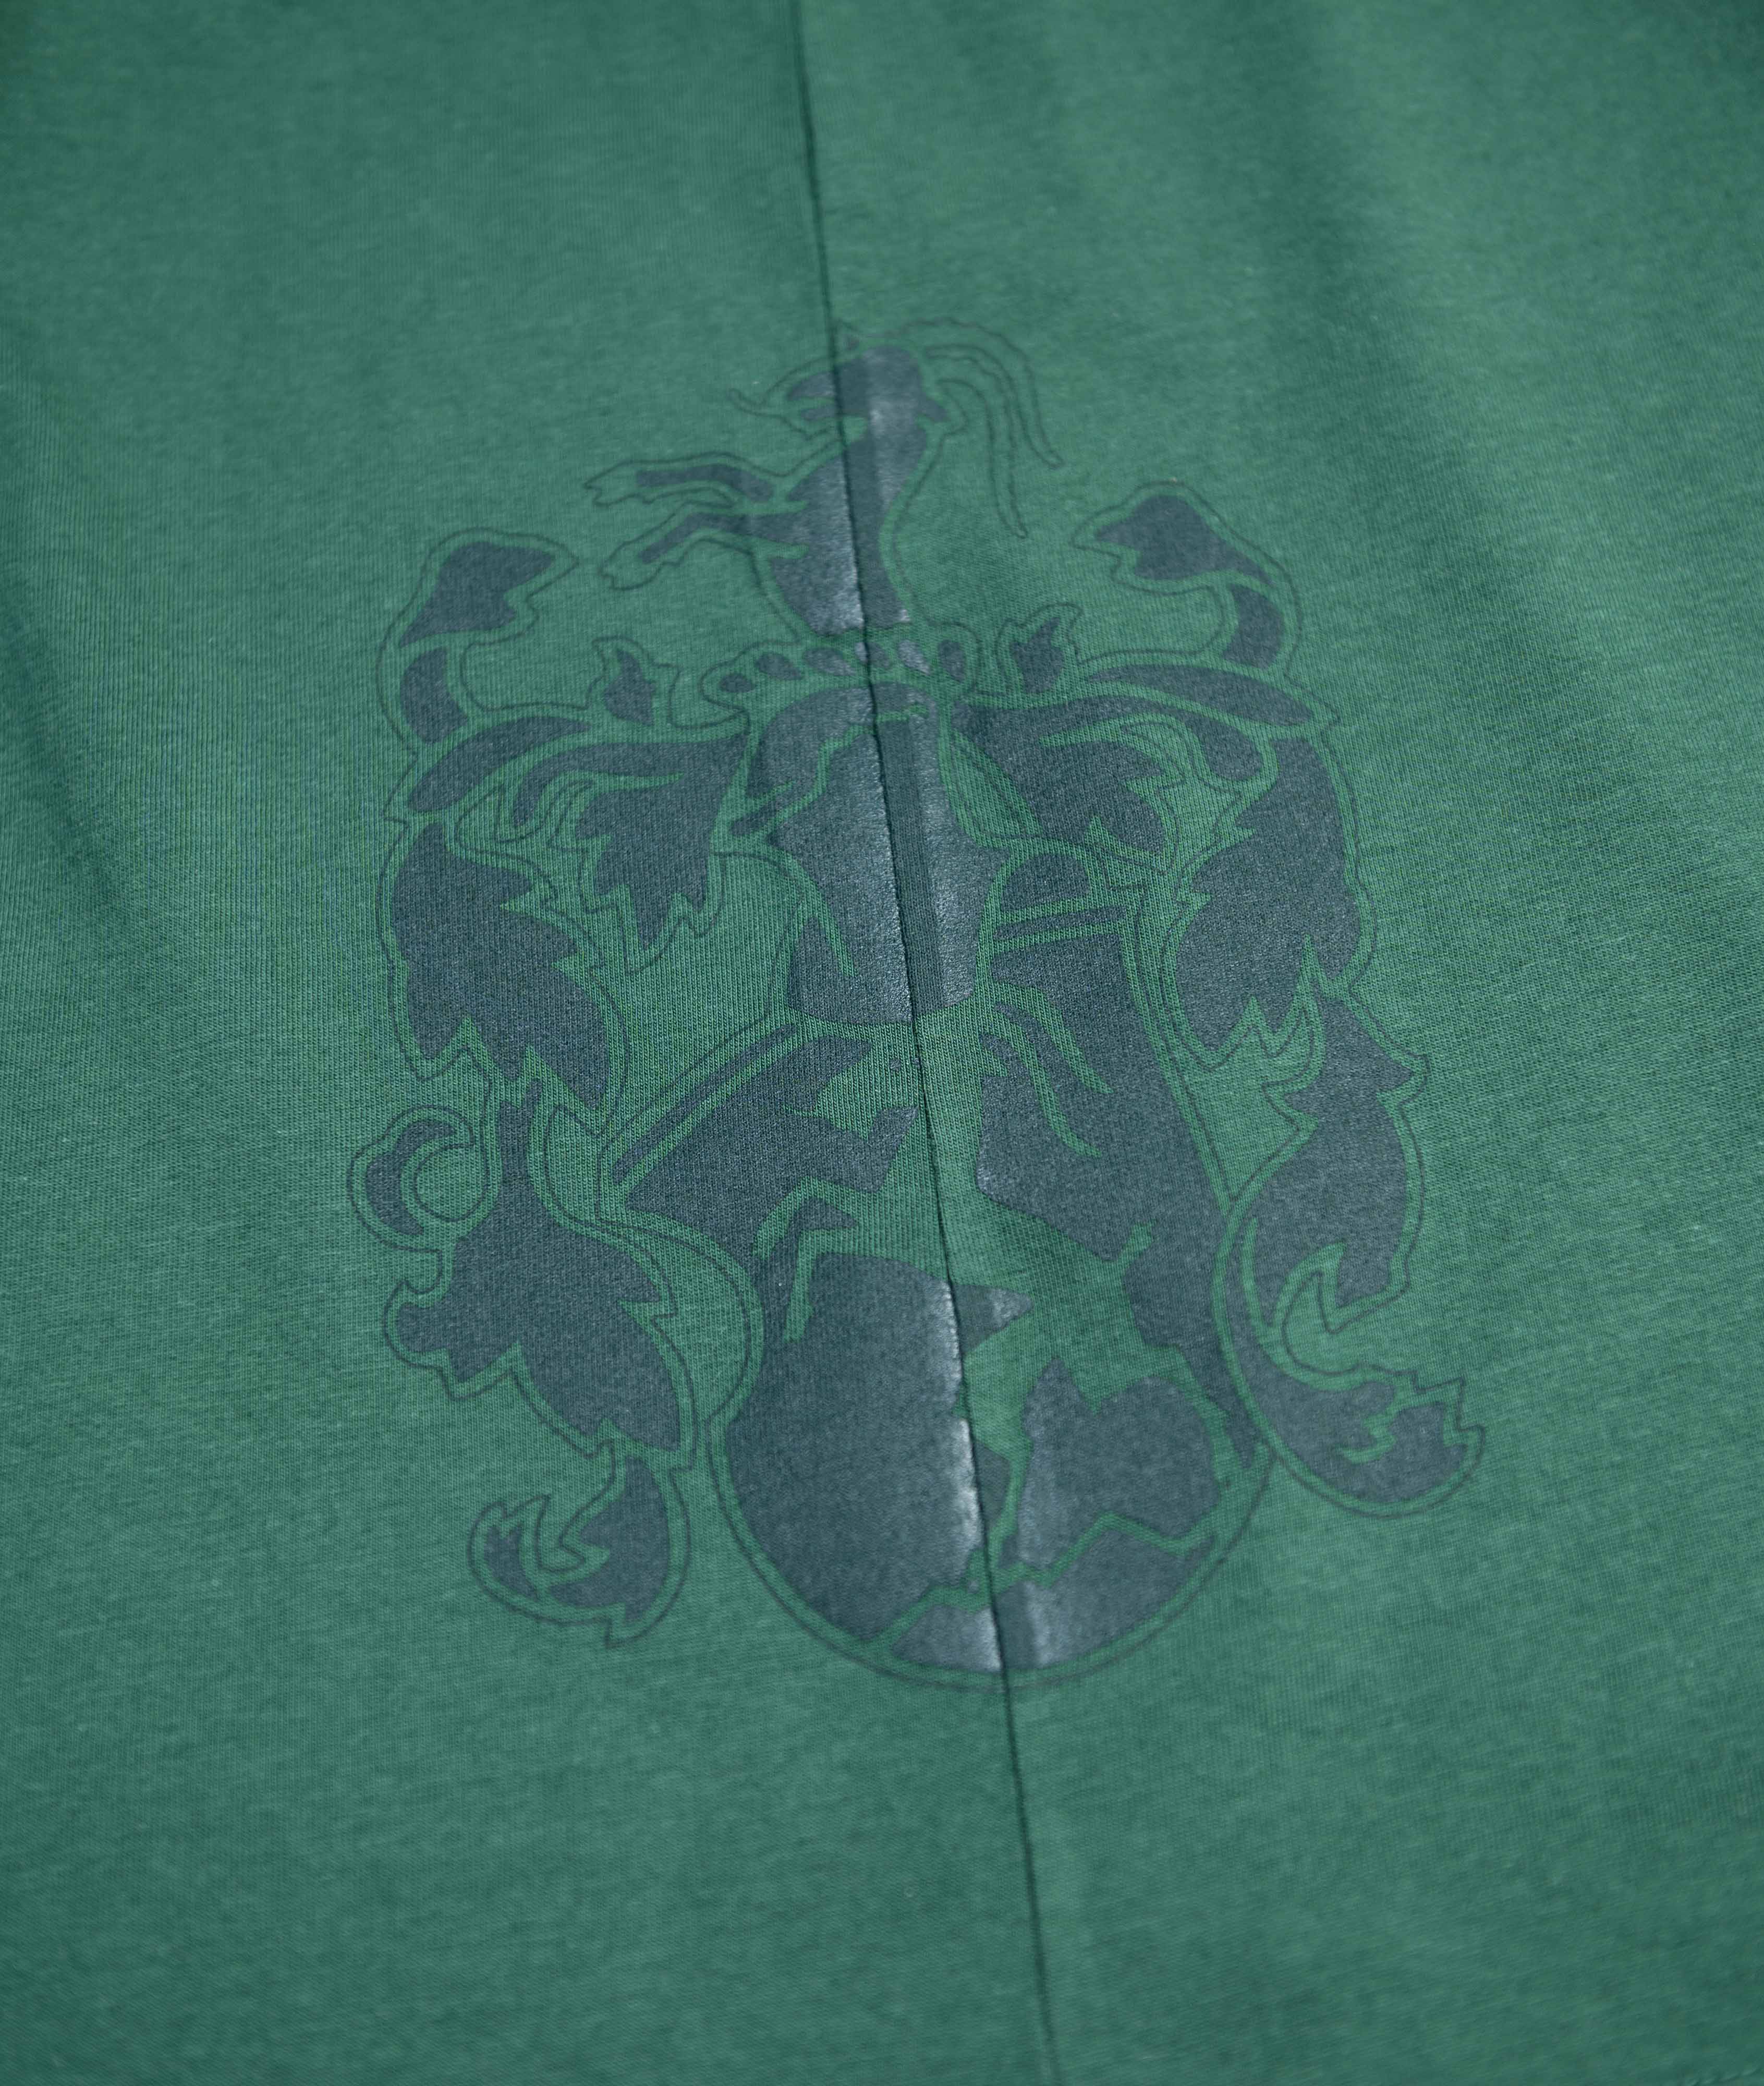    Stauder x Grubenhelden Herren T-Shirt grün